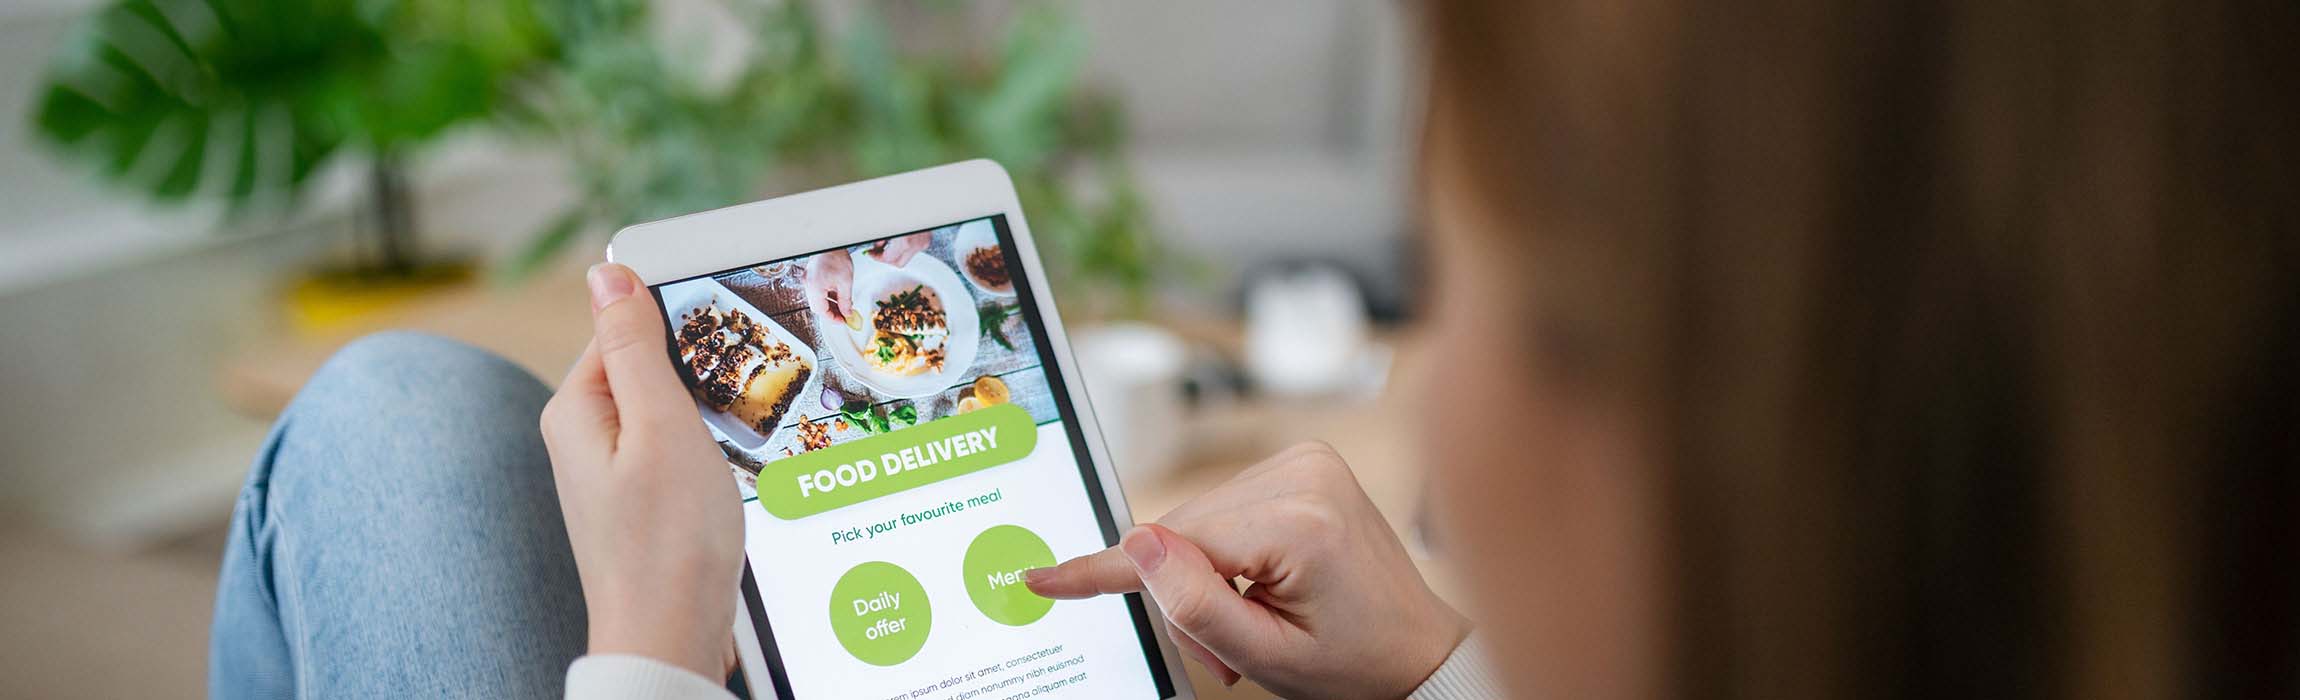 Quick Commerce: Die Zahle der Spezialisten für online bestellte und schnell gelieferte Lebensmittel steigt rasant.